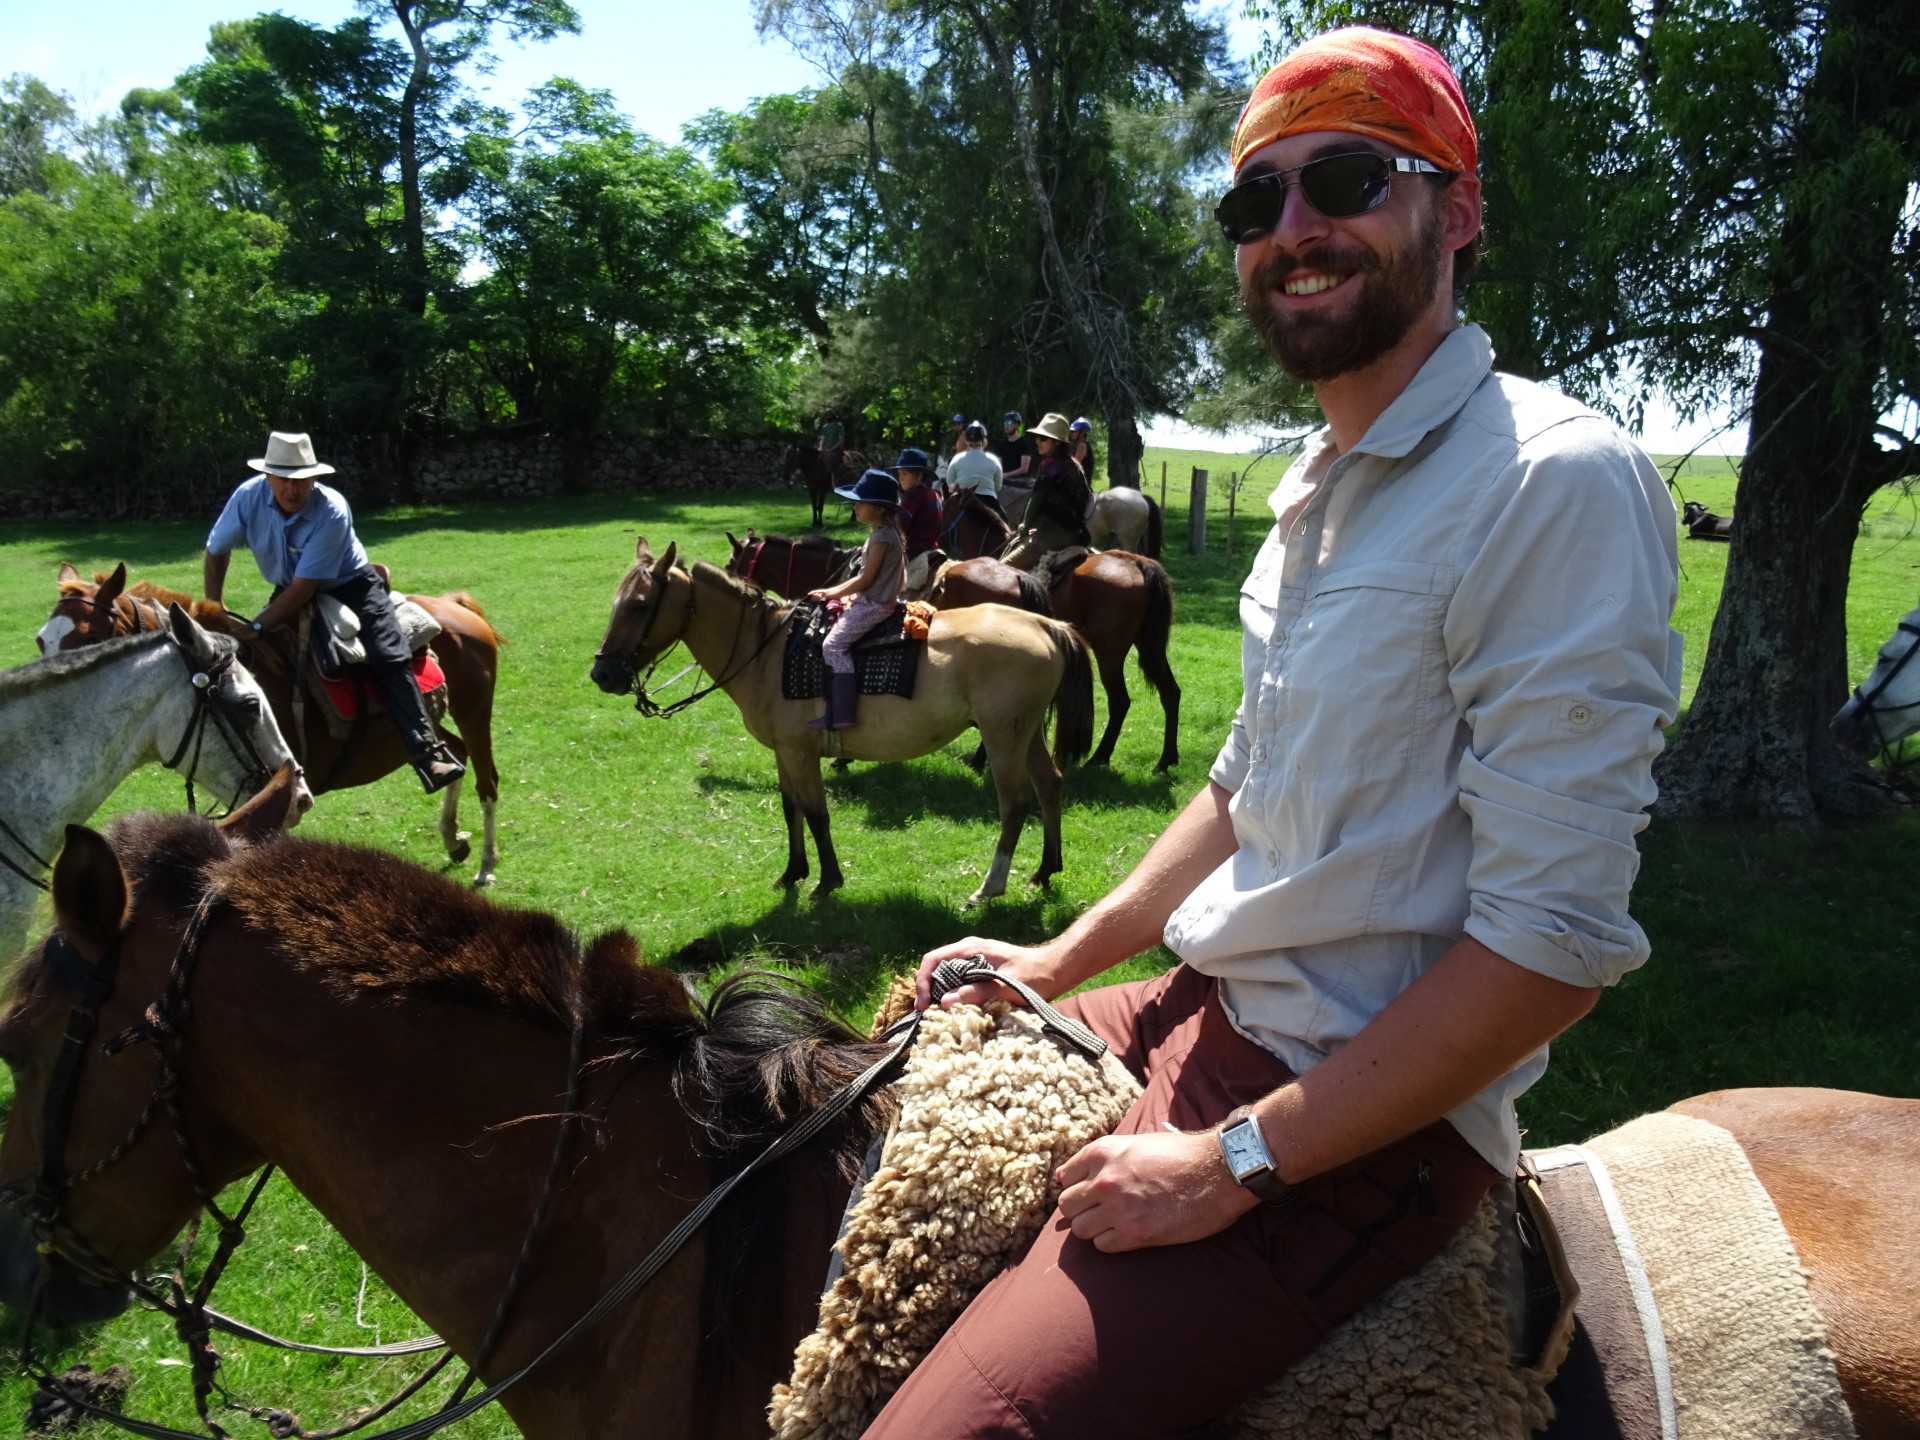 Meet Doug - Possible expert horserider.